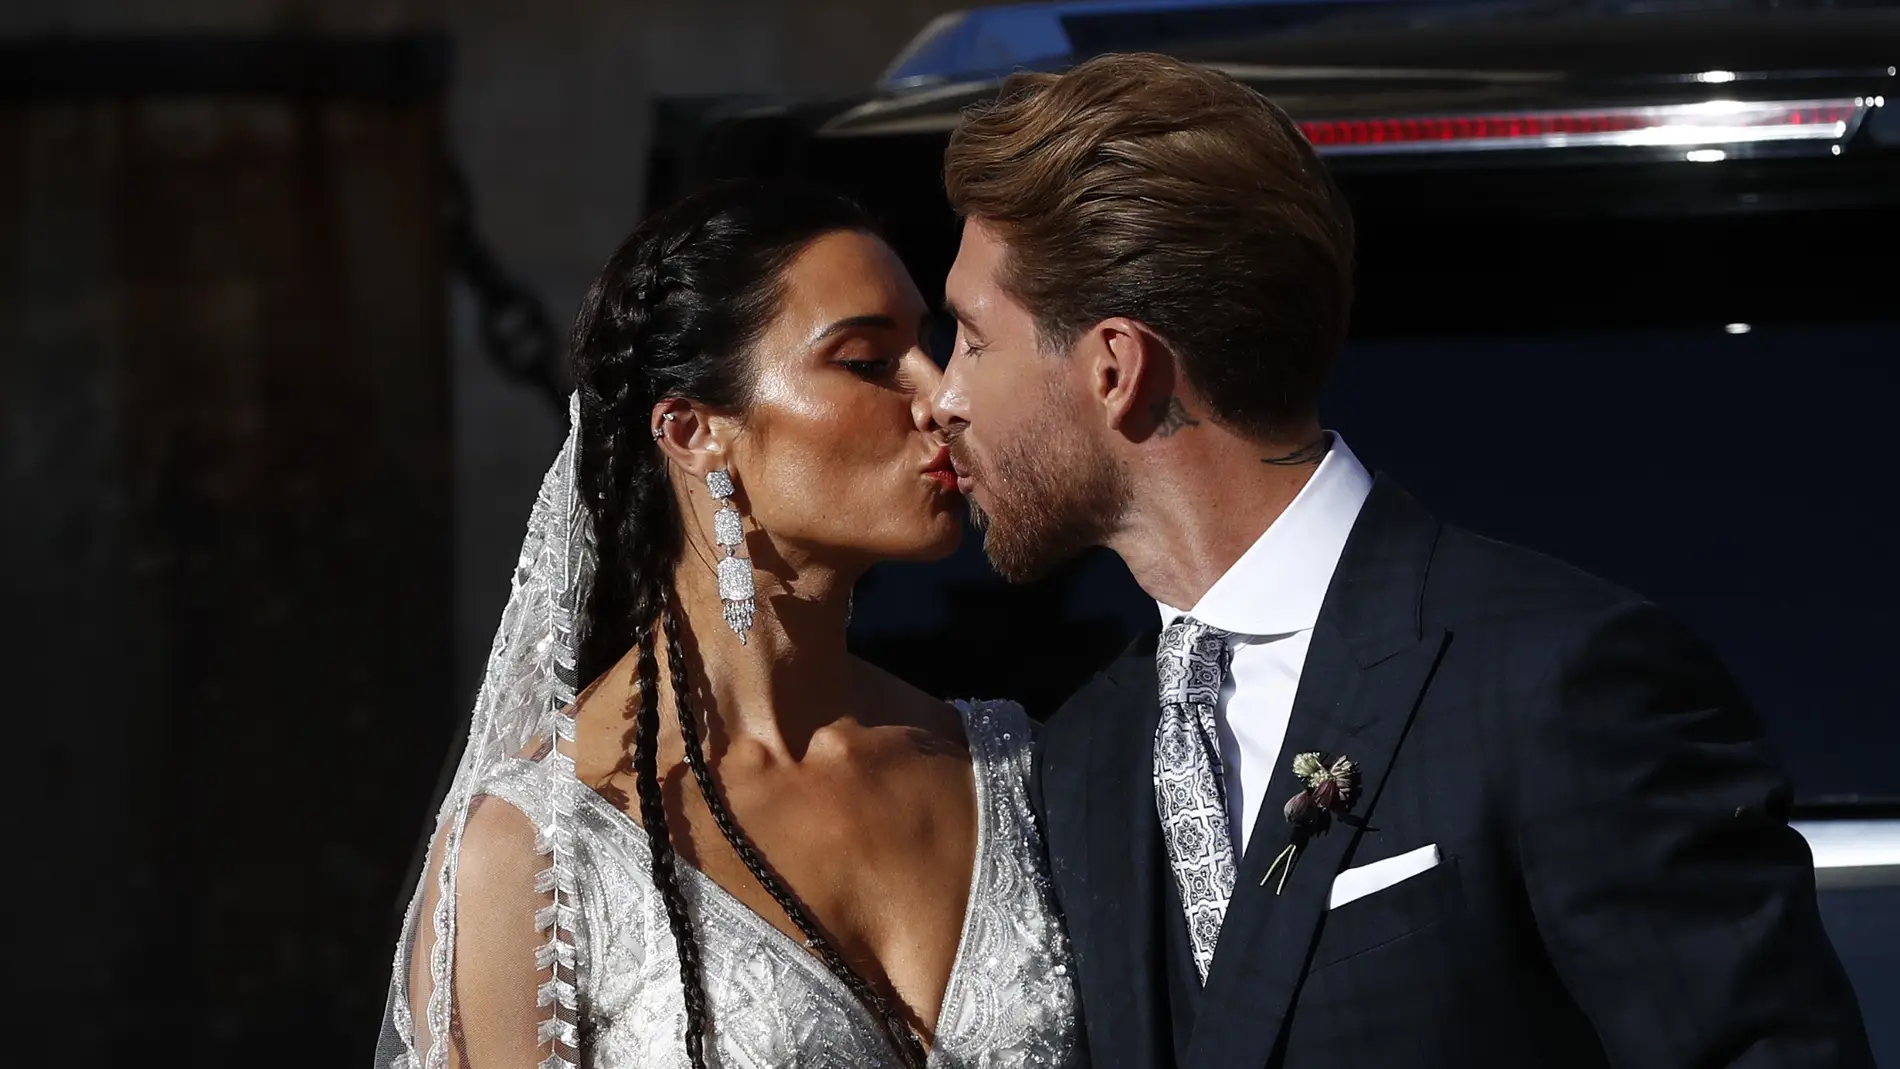 El beso de los recién casados Pilar Rubio y Sergio Ramos